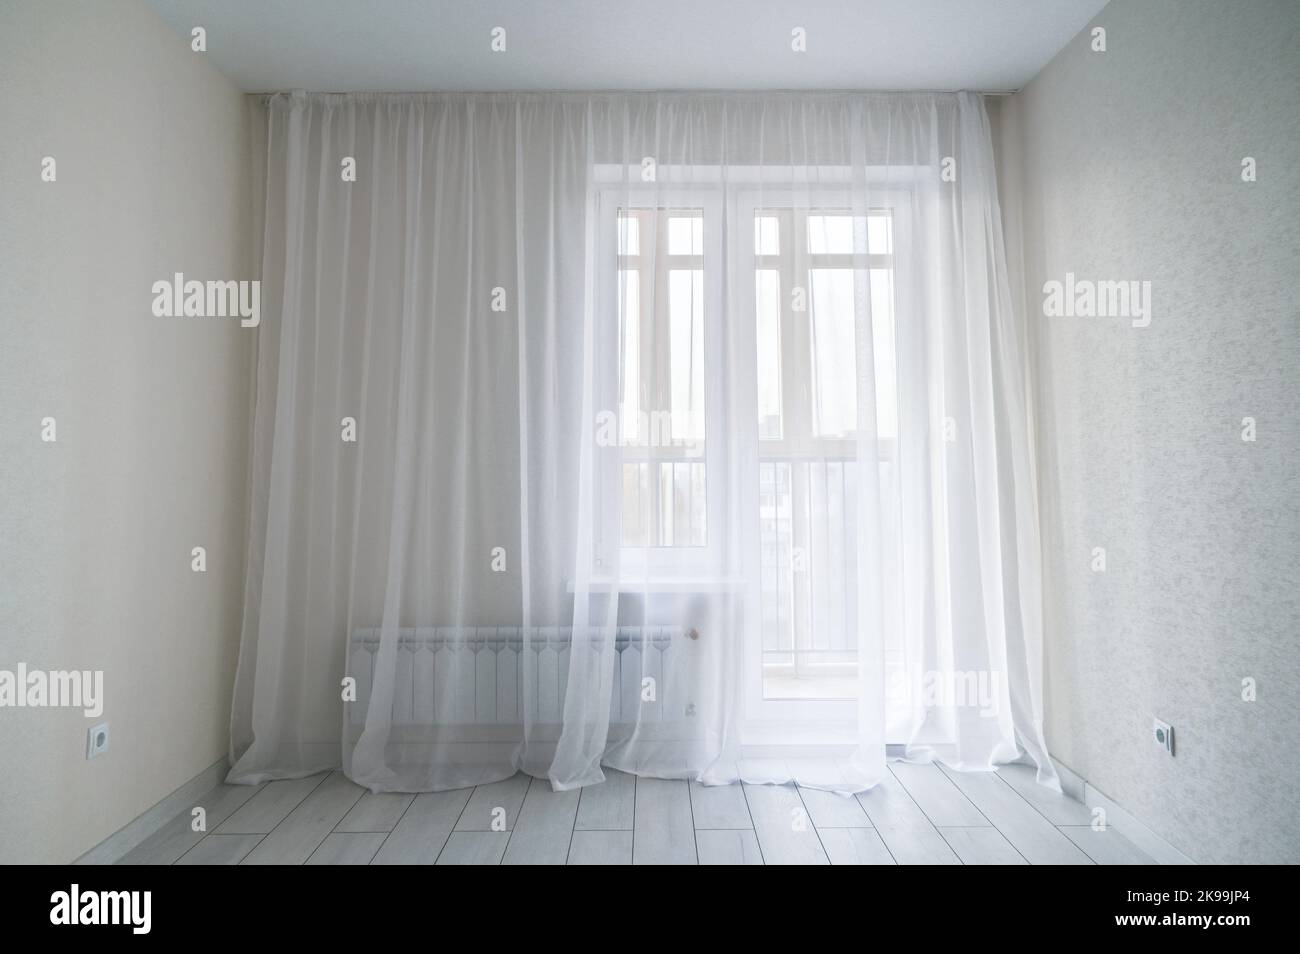 Weiße, leere, moderne Zimmereinrichtung mit Fenster und Balkon. Fenster im Hintergrund des kleinen, wirtschaftlichen Raums. Leeres Zimmer mit Fenster Stockfoto